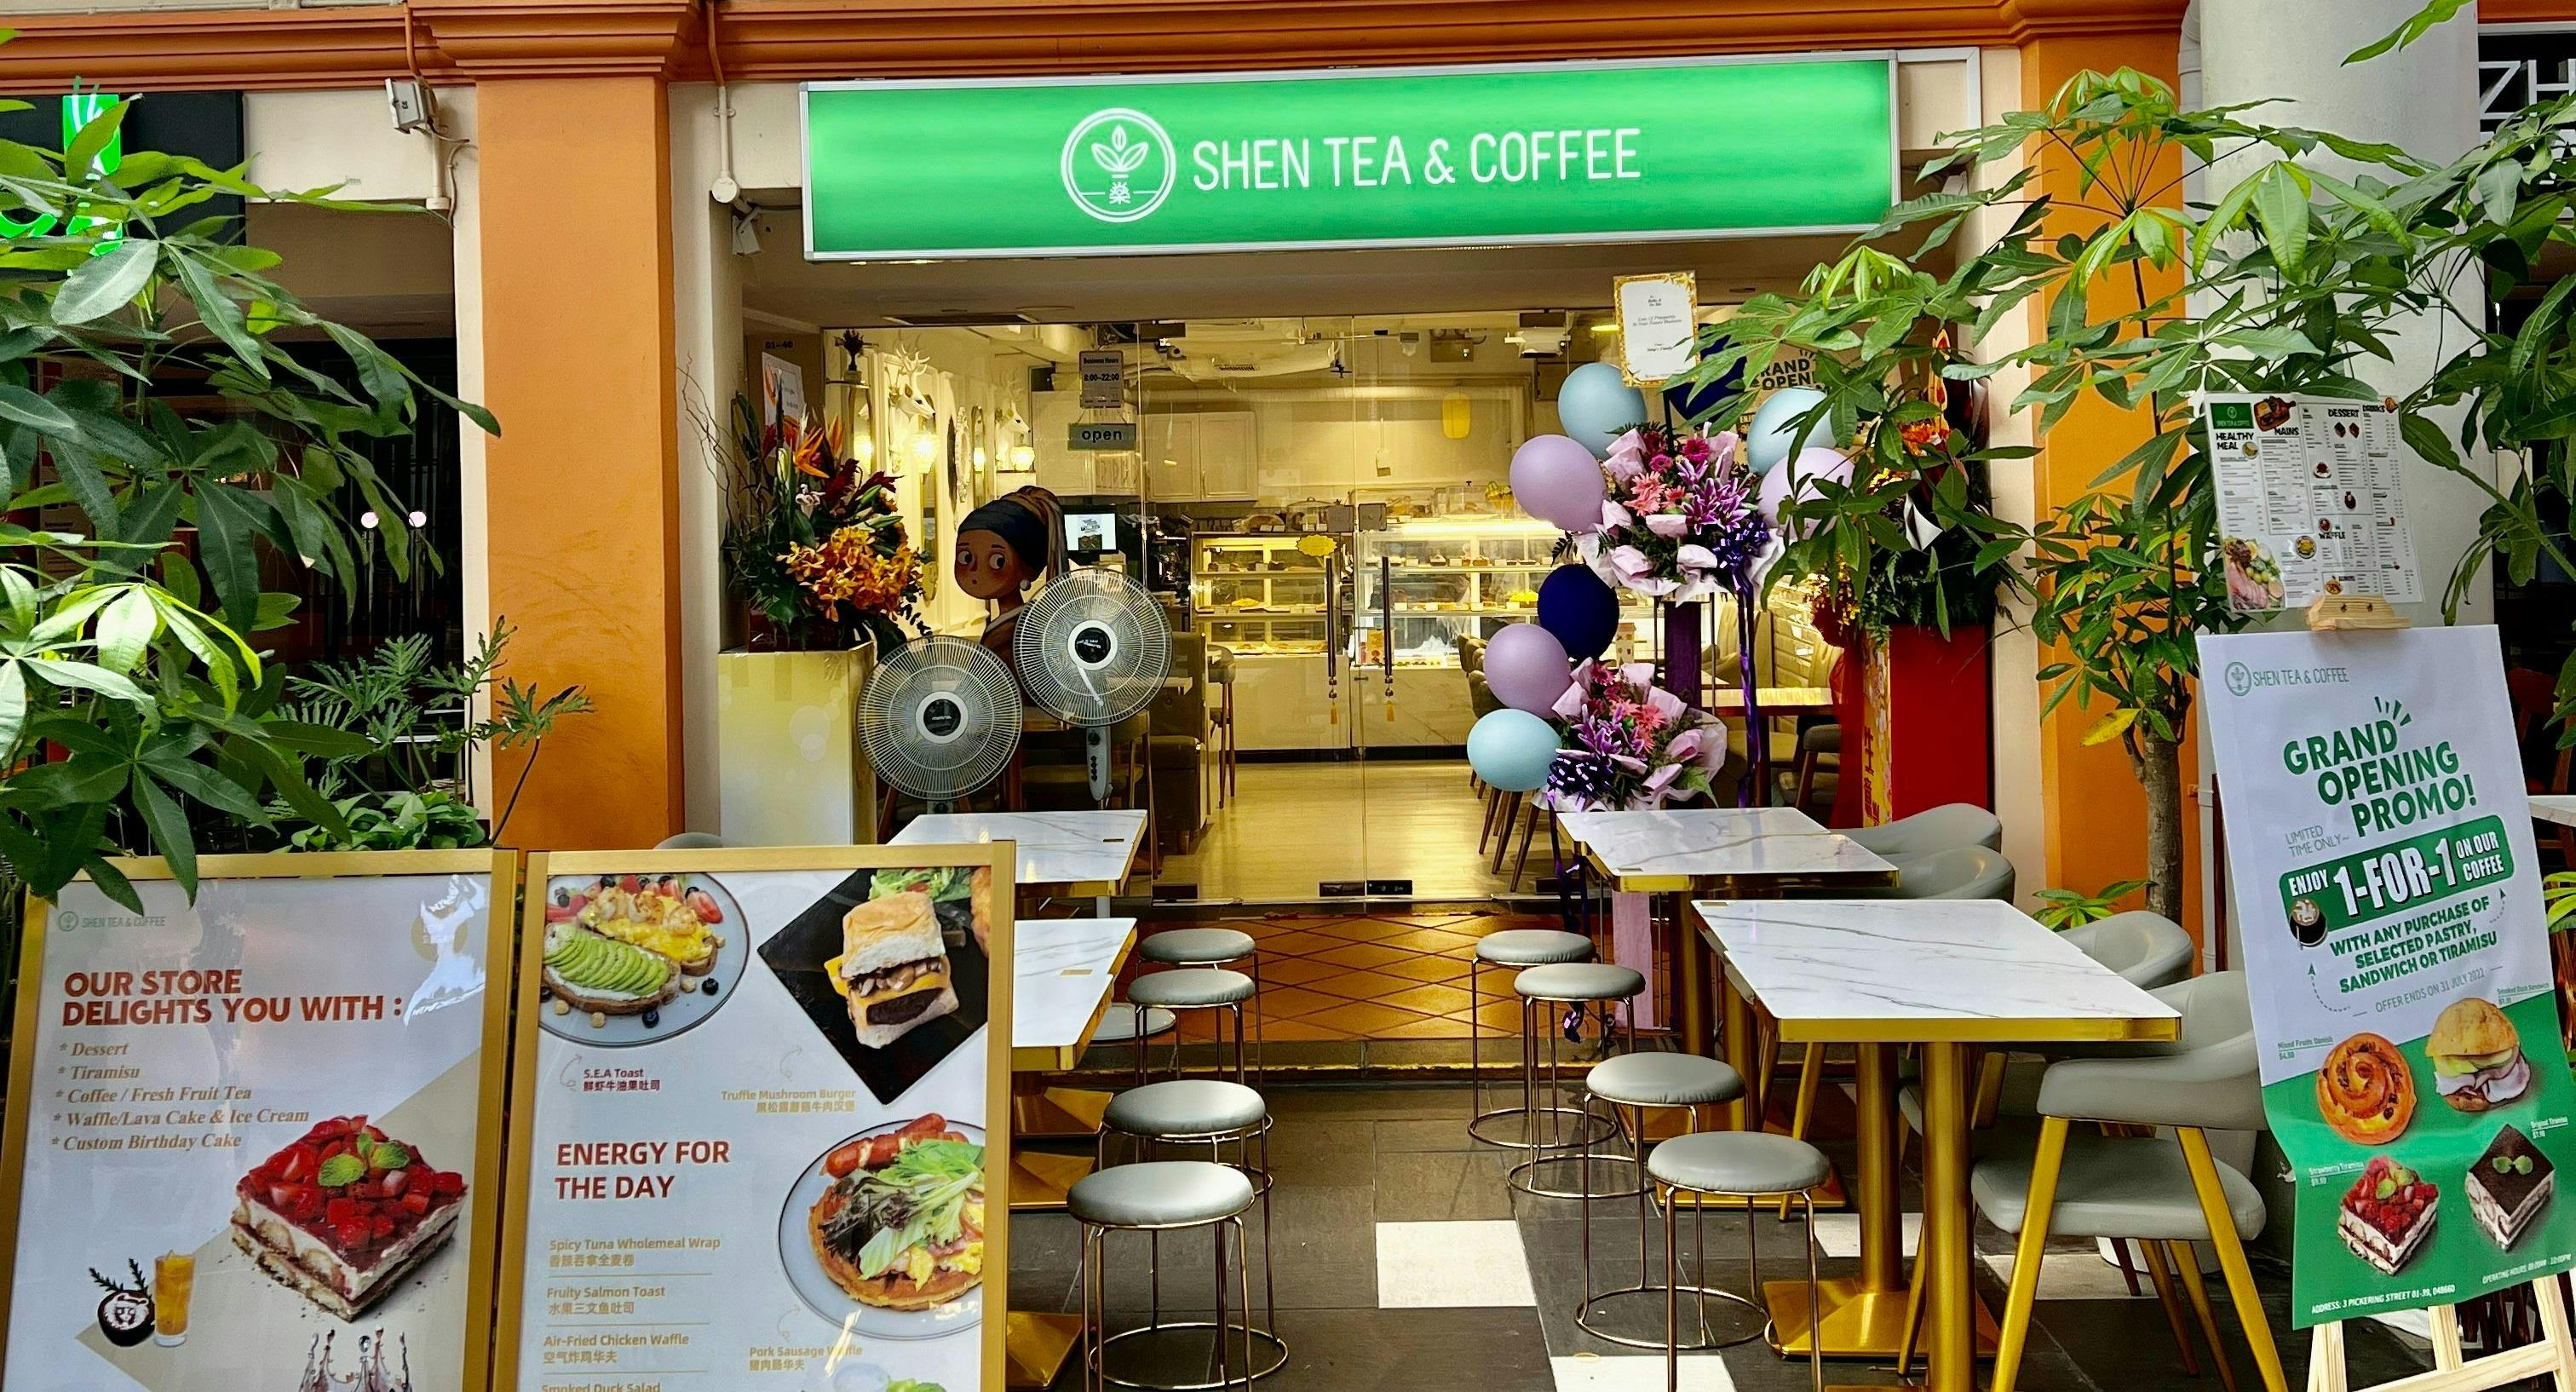 Photo of restaurant SHEN TEA & COFFEE in Telok Ayer, Singapore